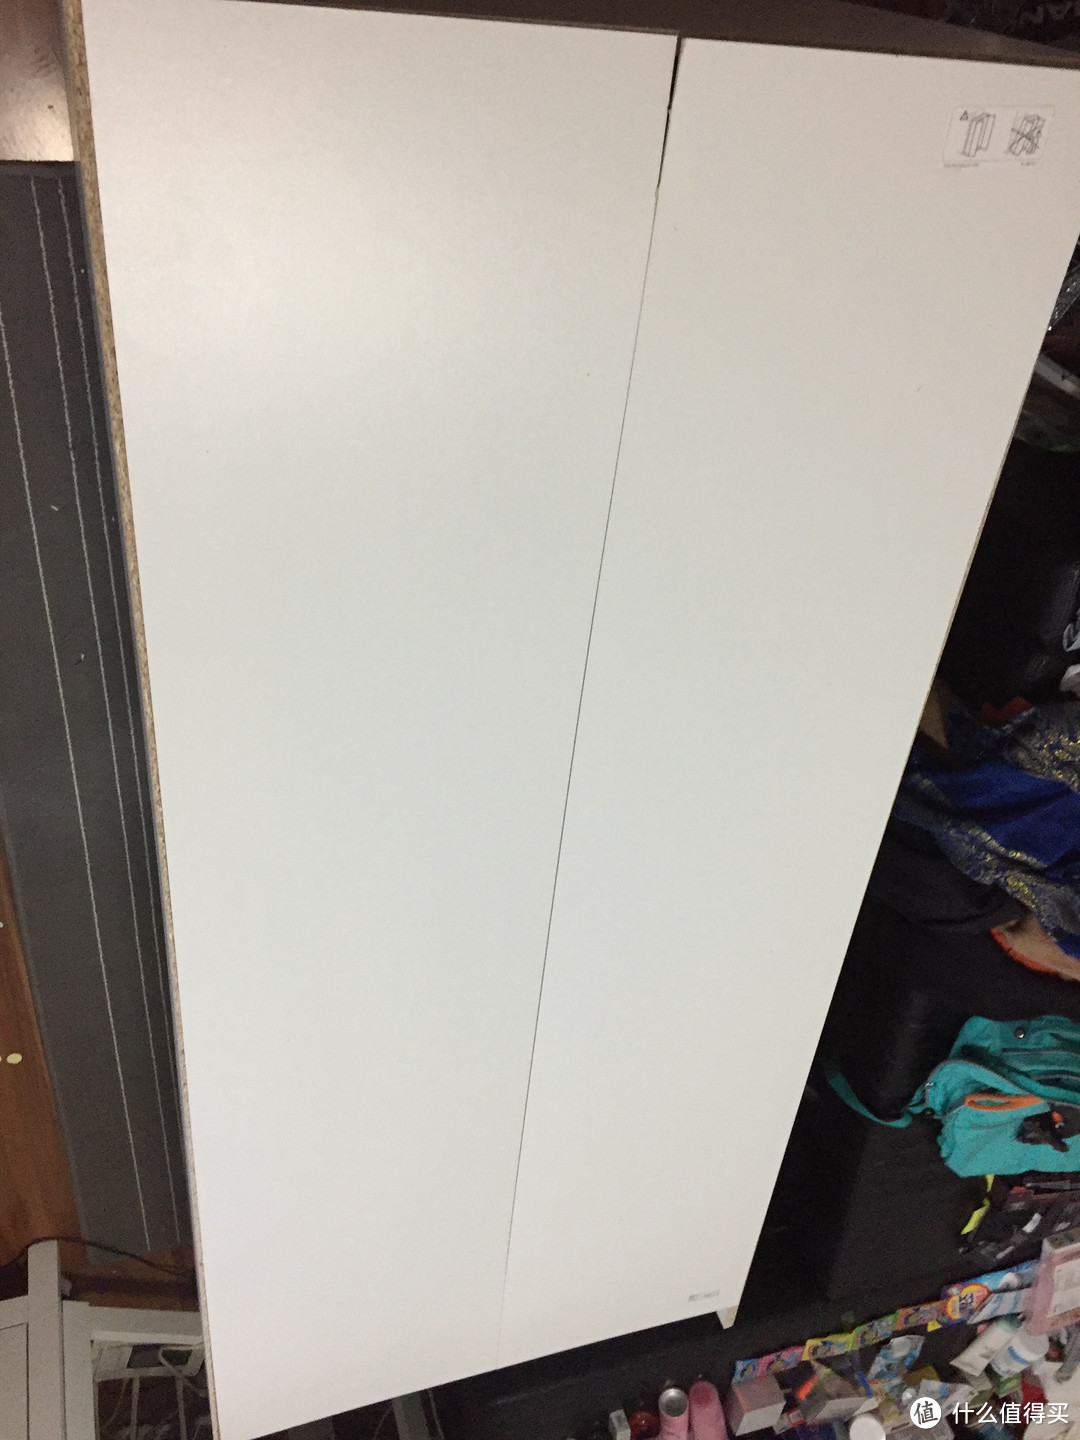 宜家 349块的 伯特拉 白色1米8 衣柜 开箱晒货组装 评测